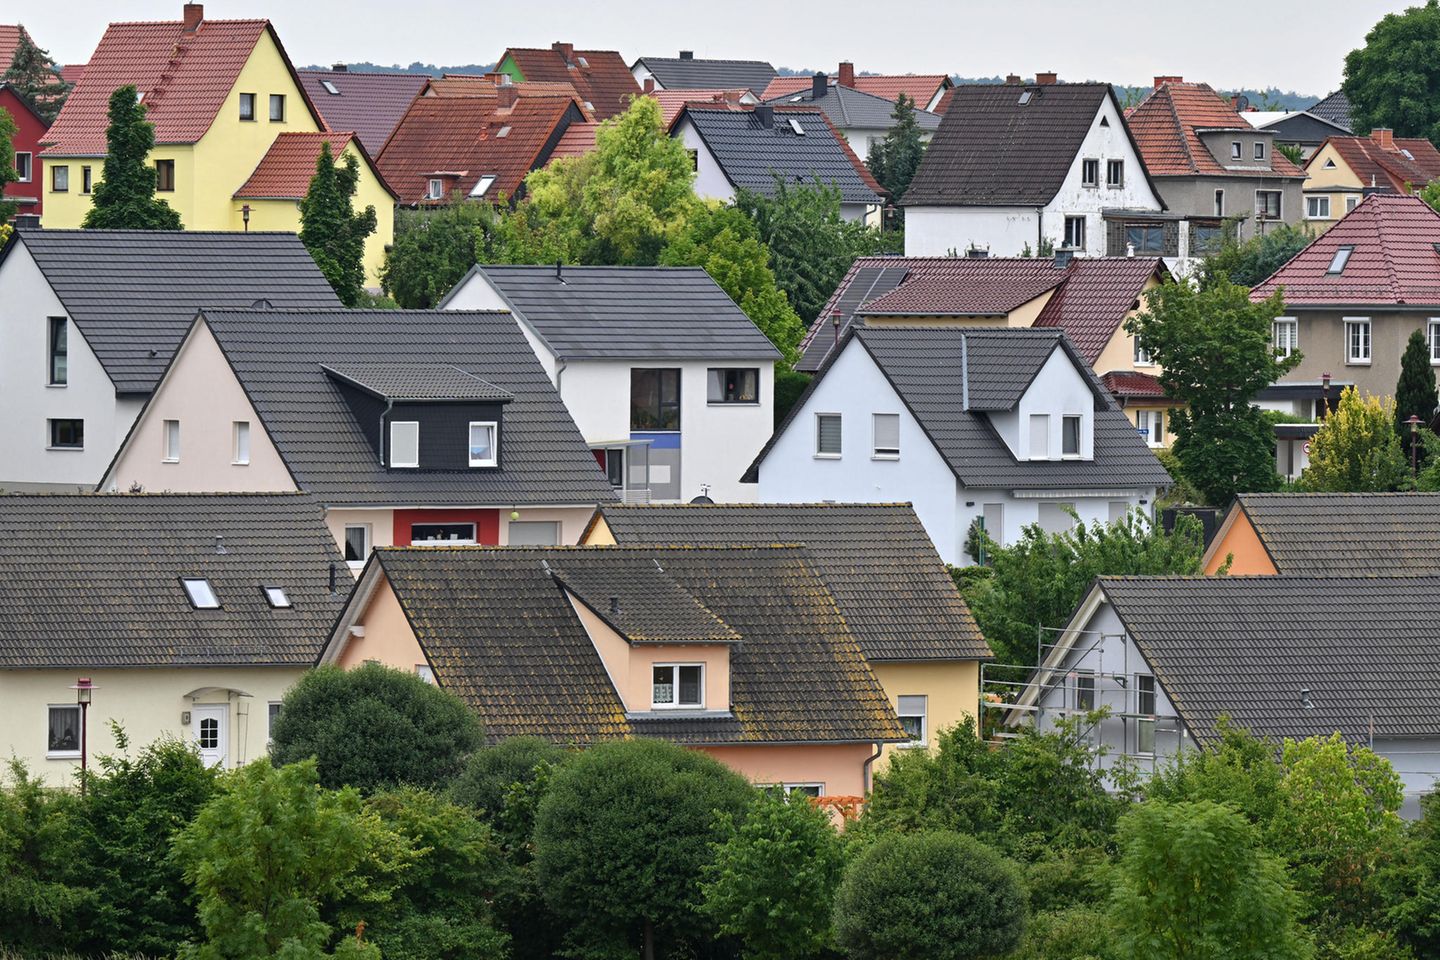 Einfamilienhäuser stehen am Erfurter Stadtrand